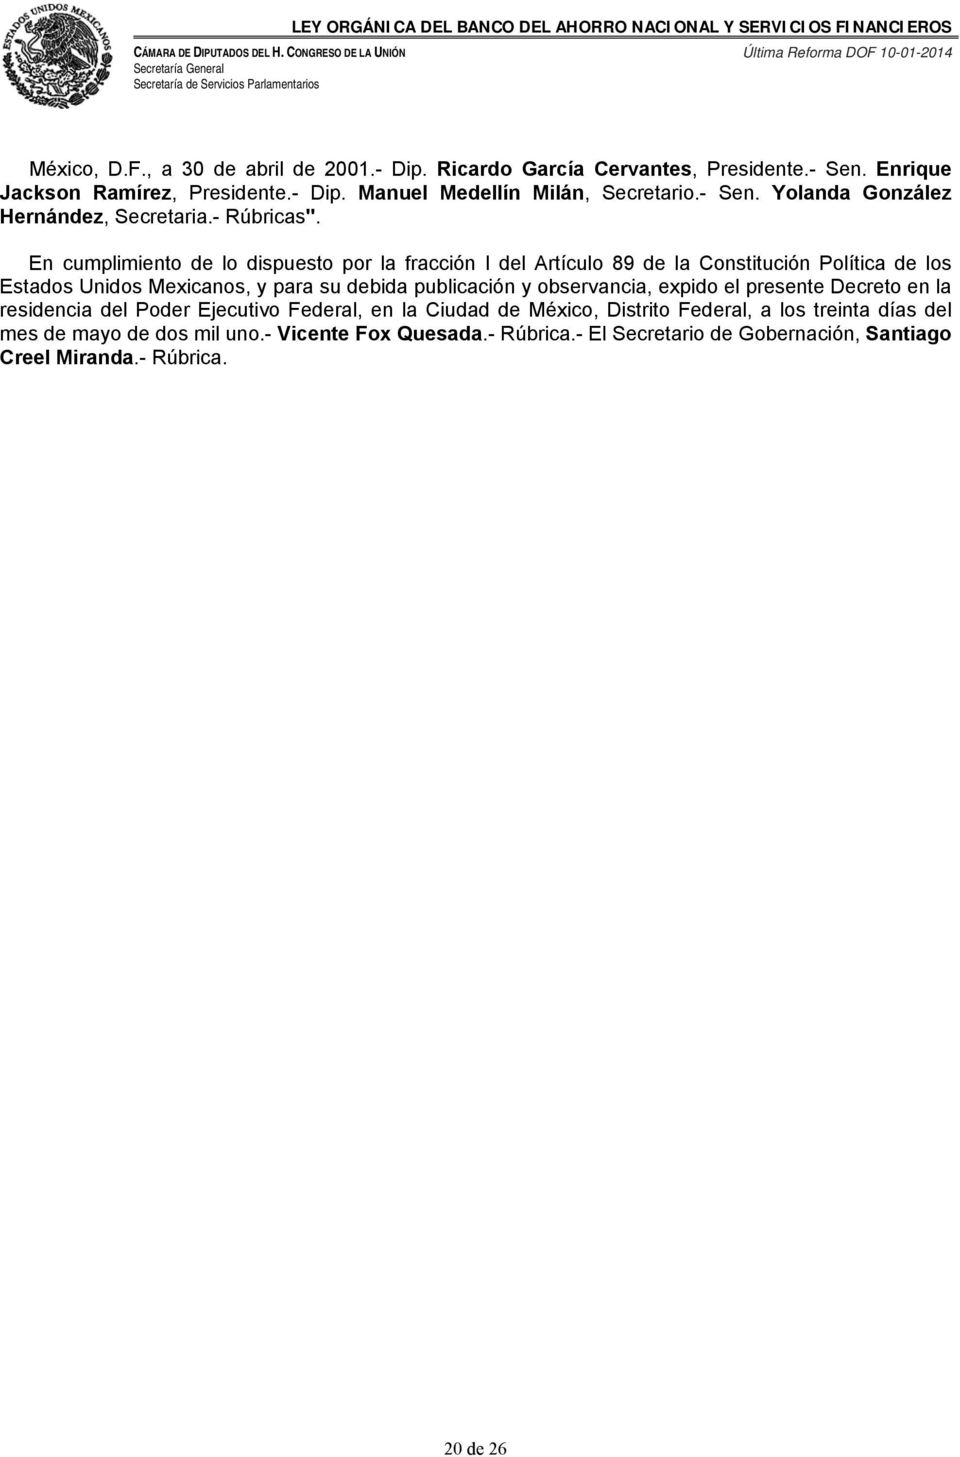 En cumplimiento de lo dispuesto por la fracción I del Artículo 89 de la Constitución Política de los Estados Unidos Mexicanos, y para su debida publicación y